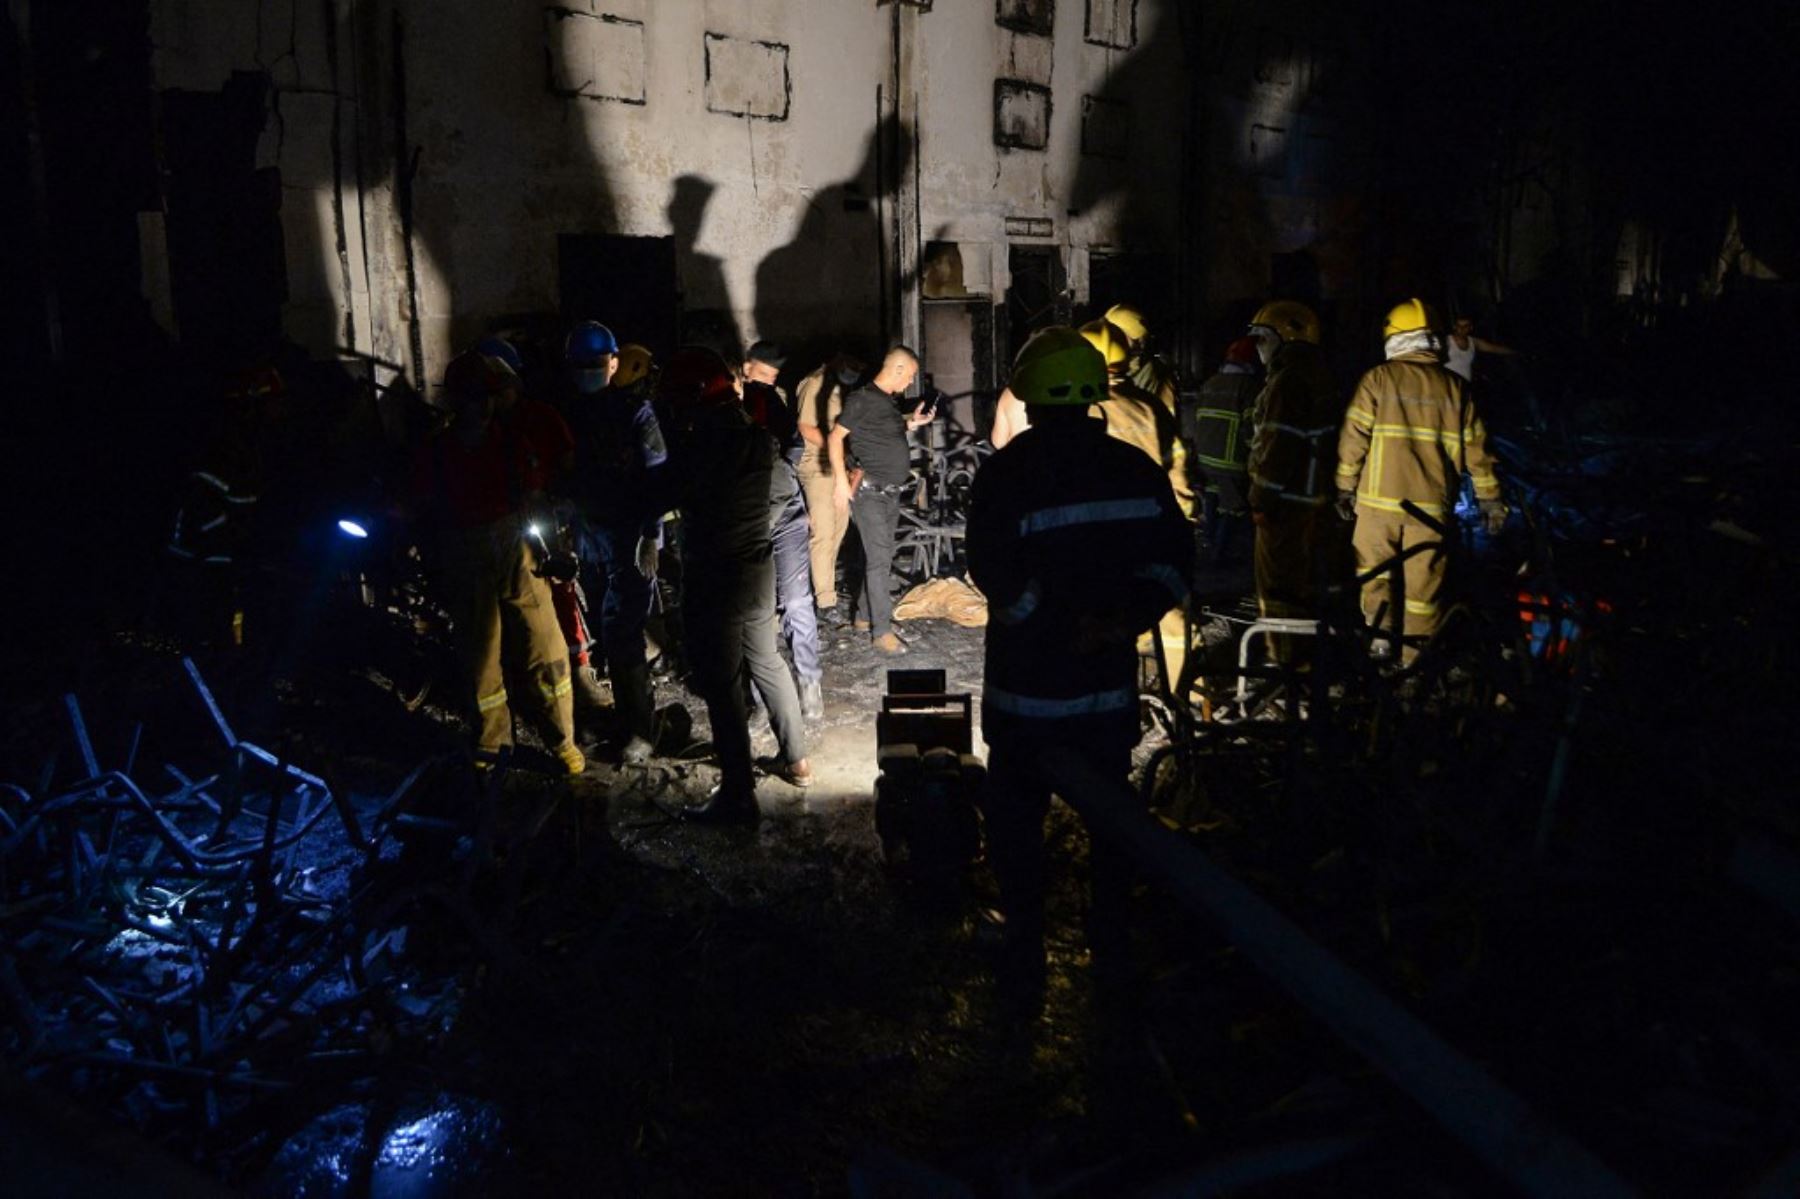 En el hospital principal de Karakosh, la pequeña ciudad cristiana donde se produjo la catástrofe, un fotógrafo de la AFP vio llegar numerosas ambulancias con las sirenas encendidas en mitad de la noche. Foto: AFP